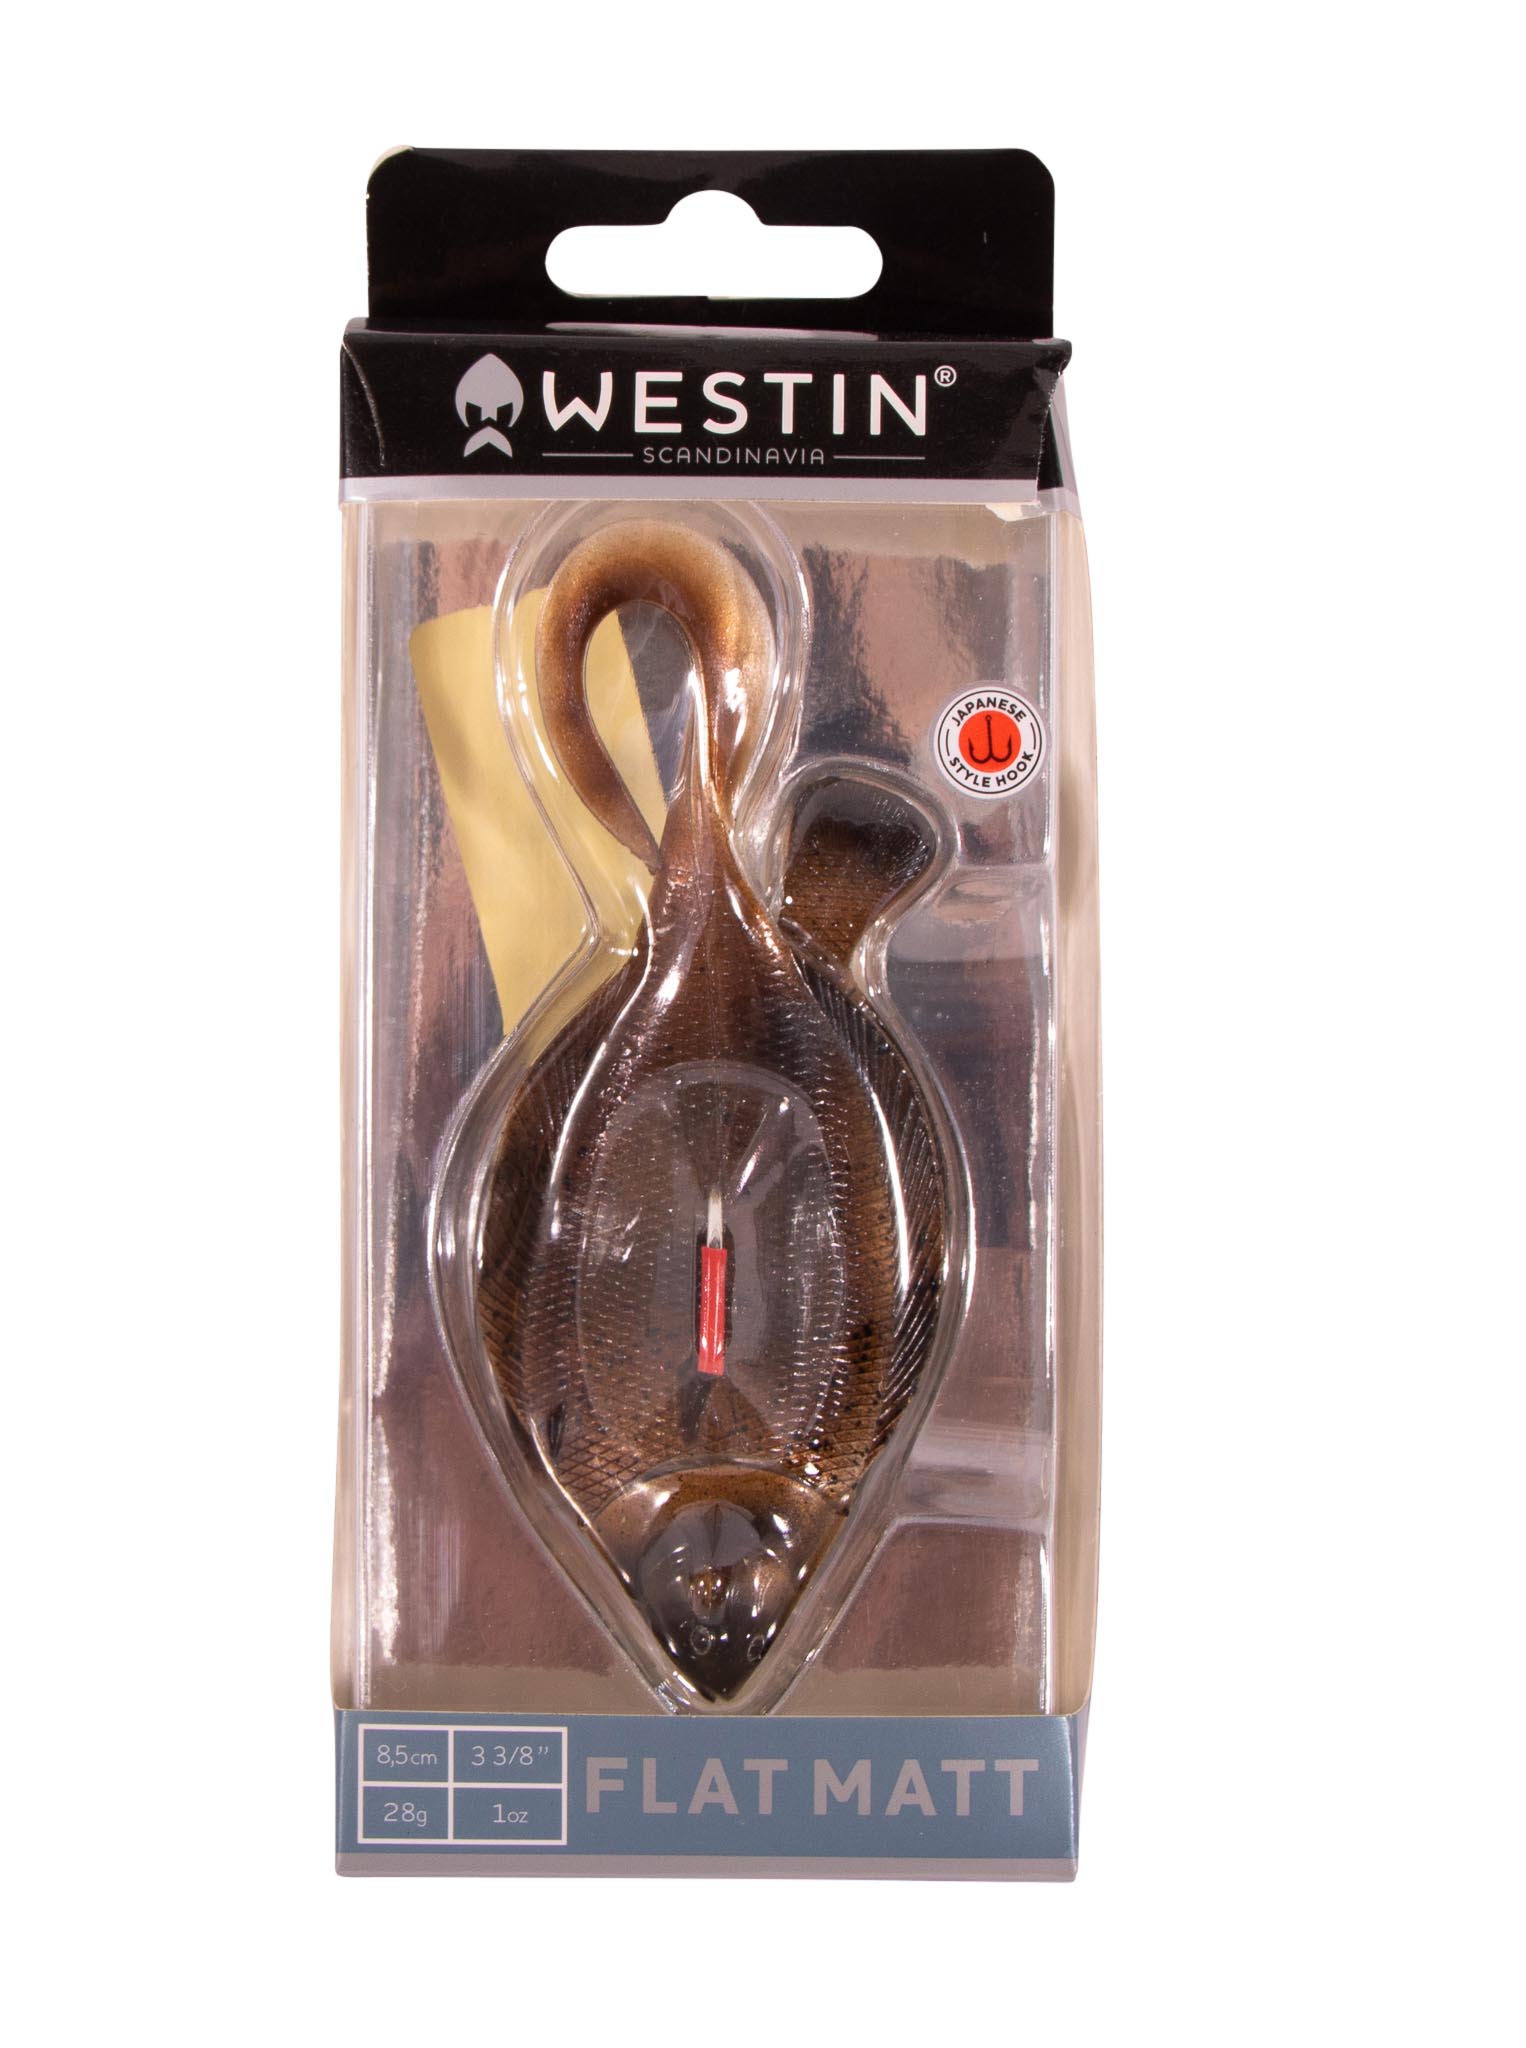 Westin Flat Matt Jig 8,5cm (28g) 2+1pc